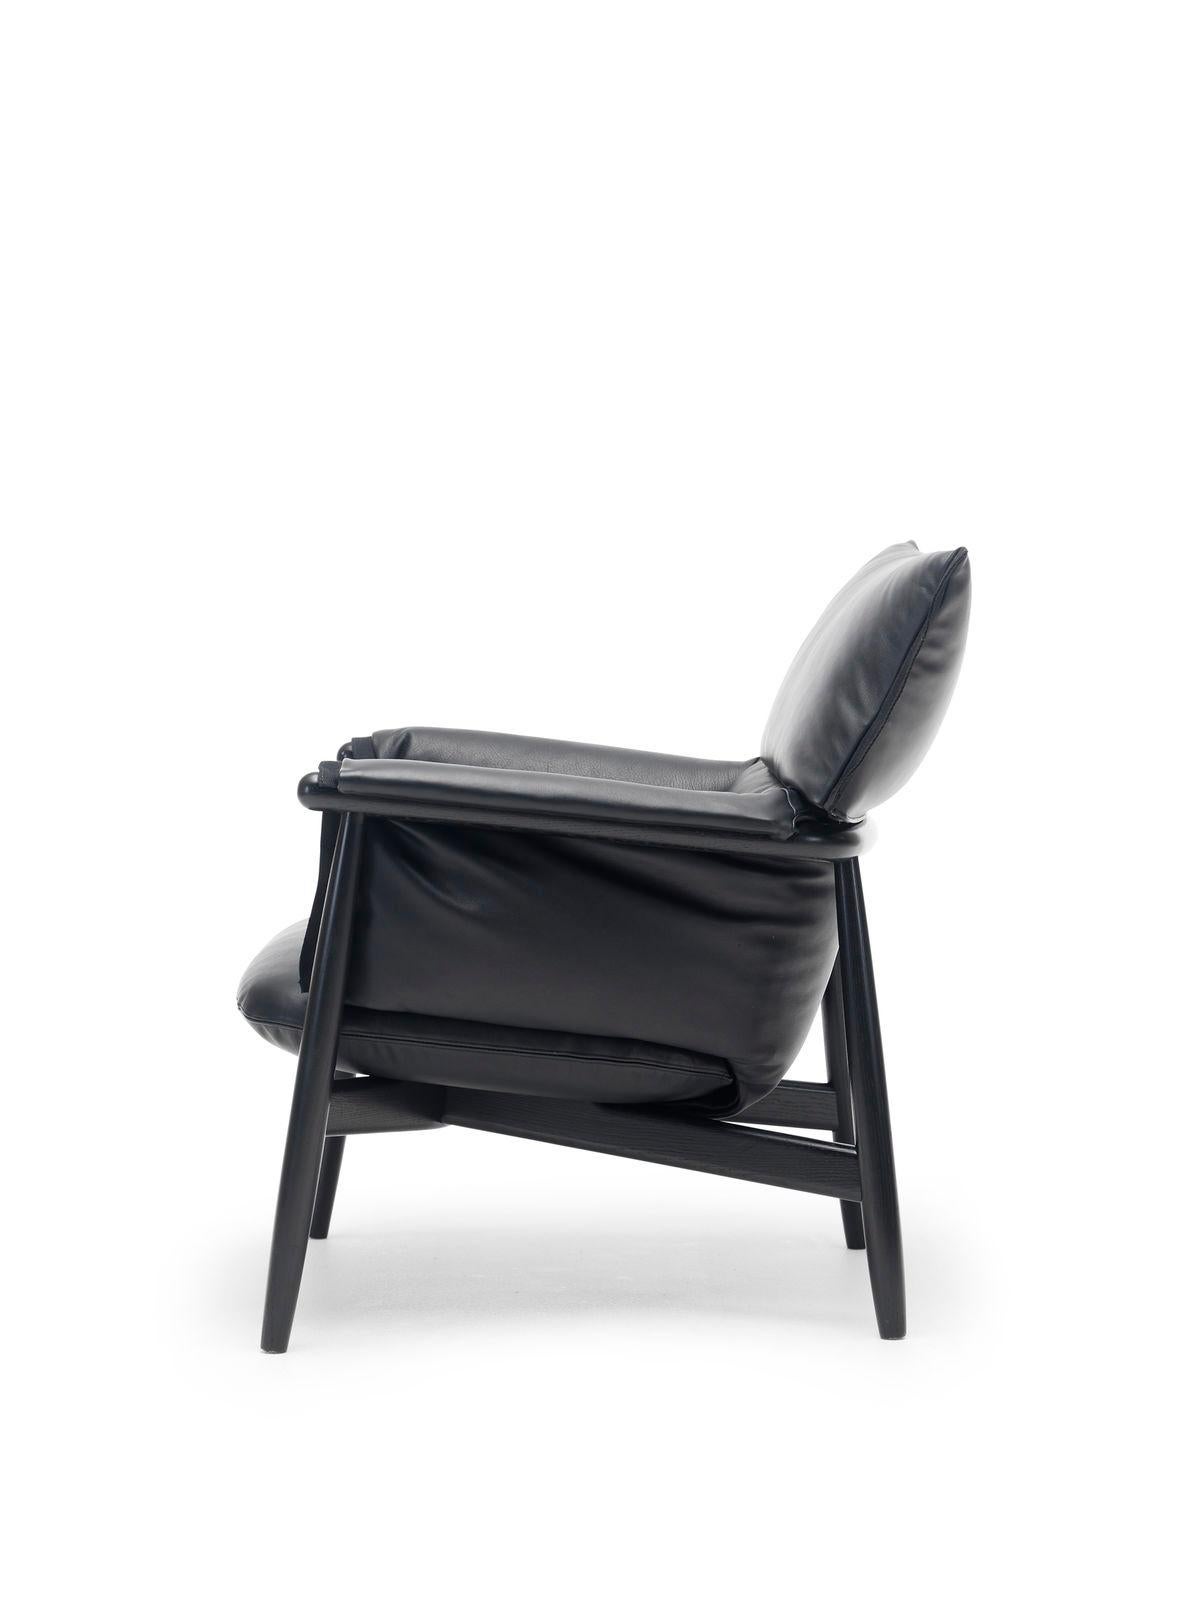 La chaise longue Embrace E015 a été conçue par EOOS pour Carl Hansen & Søn en 2016. Conçus pour la détente, ses coussins moelleux apportent un confort supplémentaire. La chaise longue Embrace fait partie de la luxueuse série Embrace.